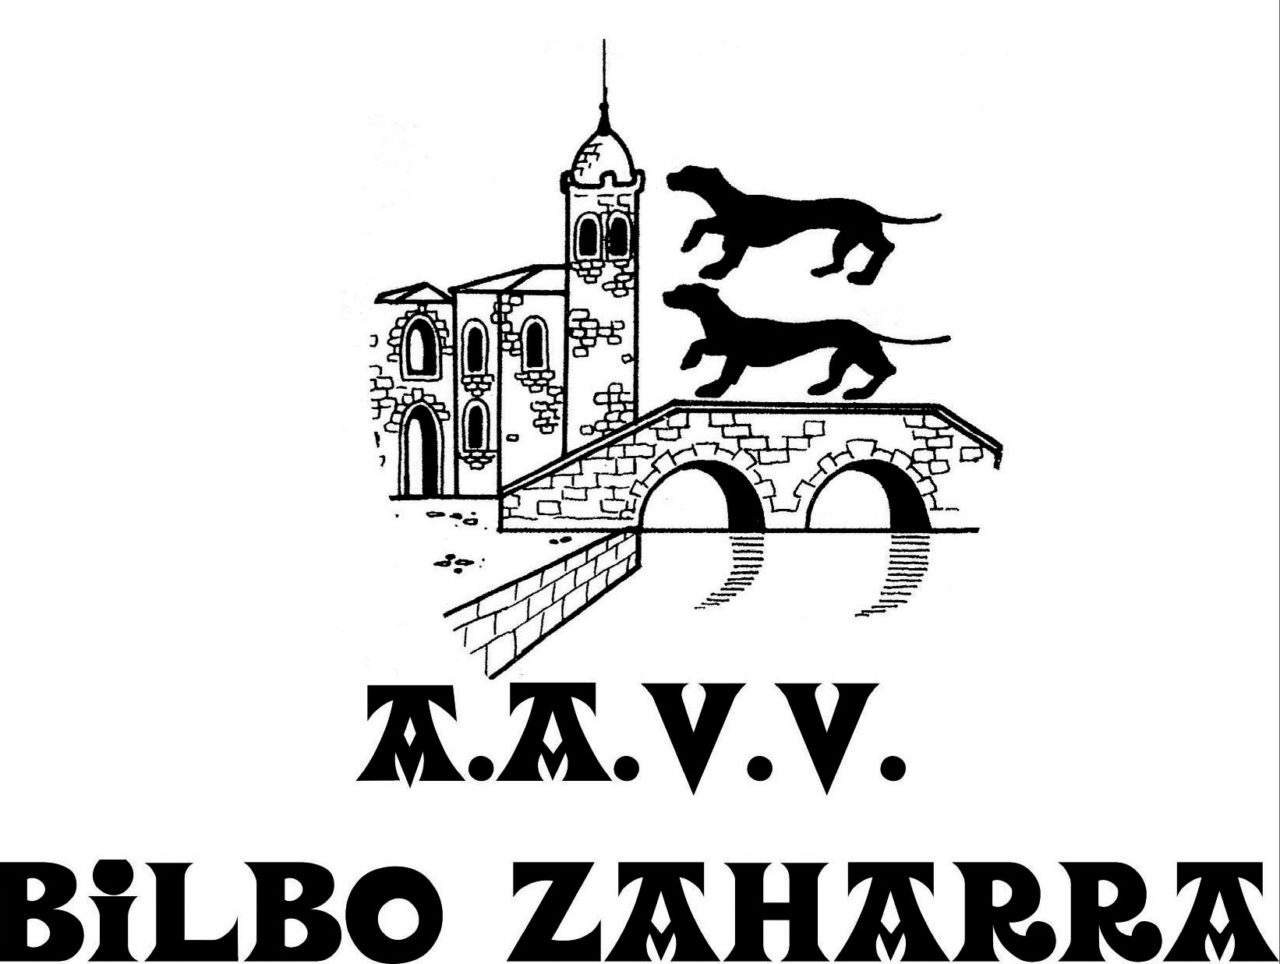 LOGO A.A.V.V.escala de grisesBilbo Zaharra